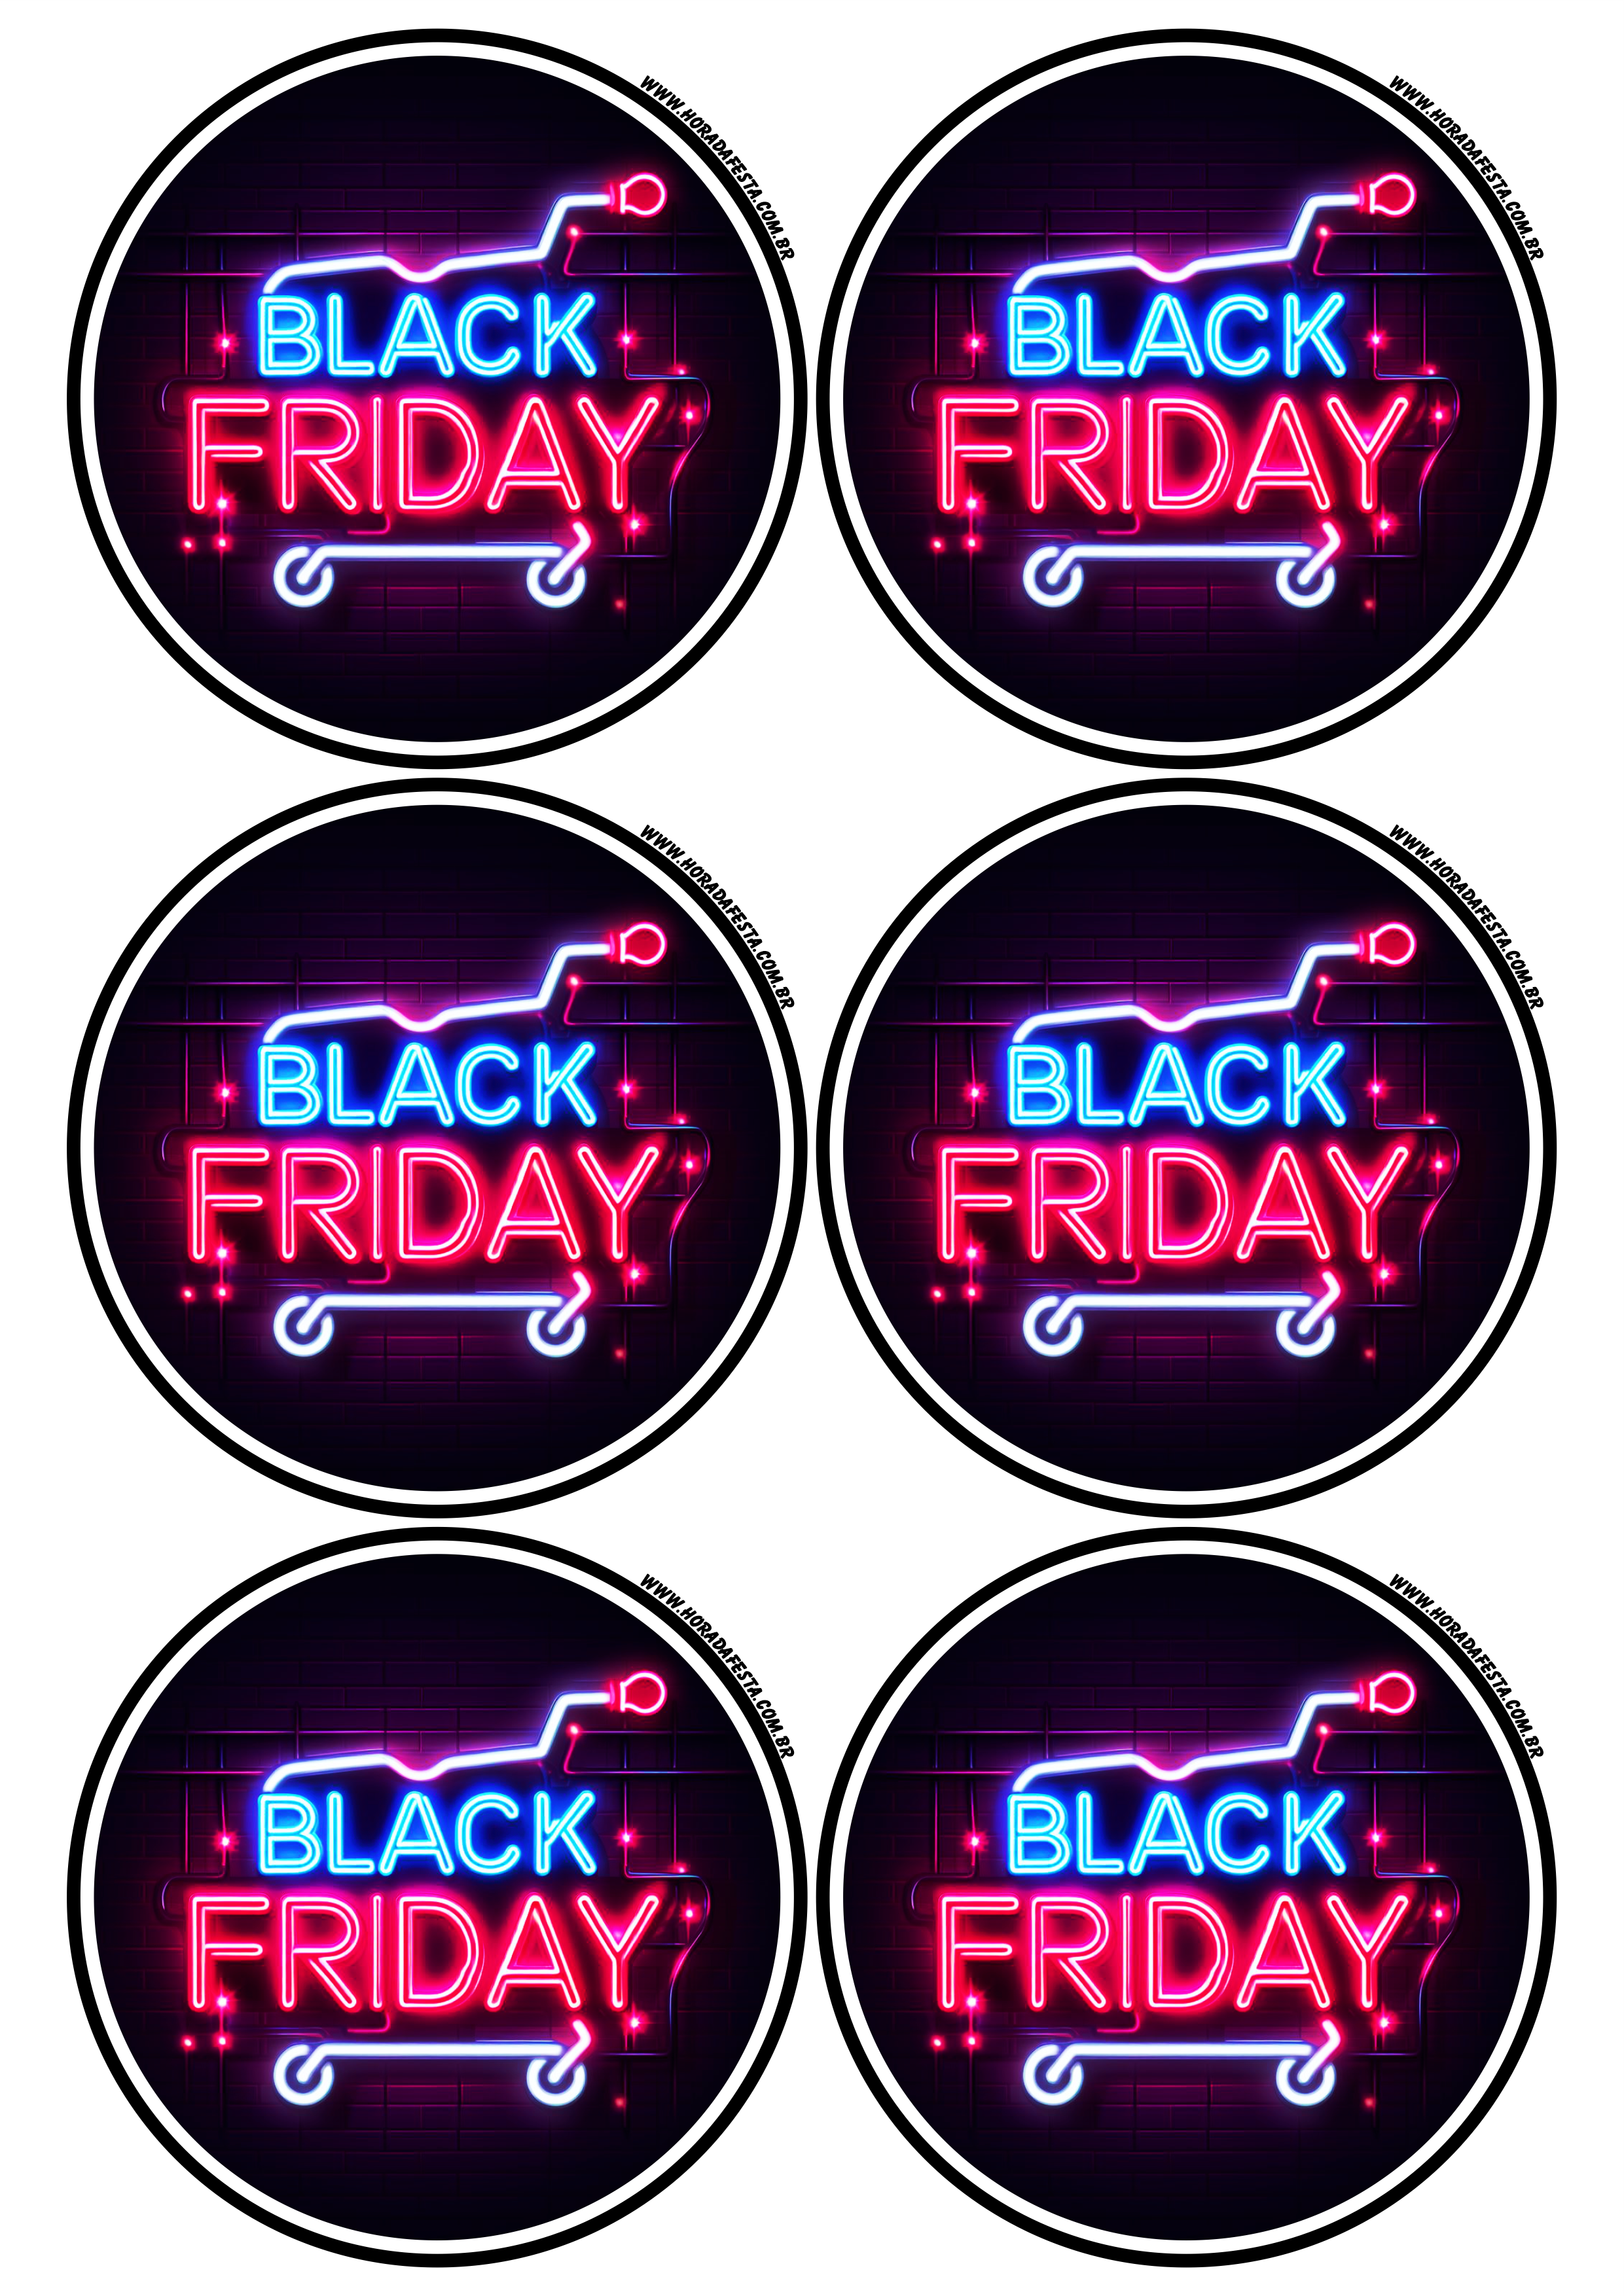 Black Friday adesivo redondo tag sticker painel artes gráficas lojas online promoções 6 imagens png